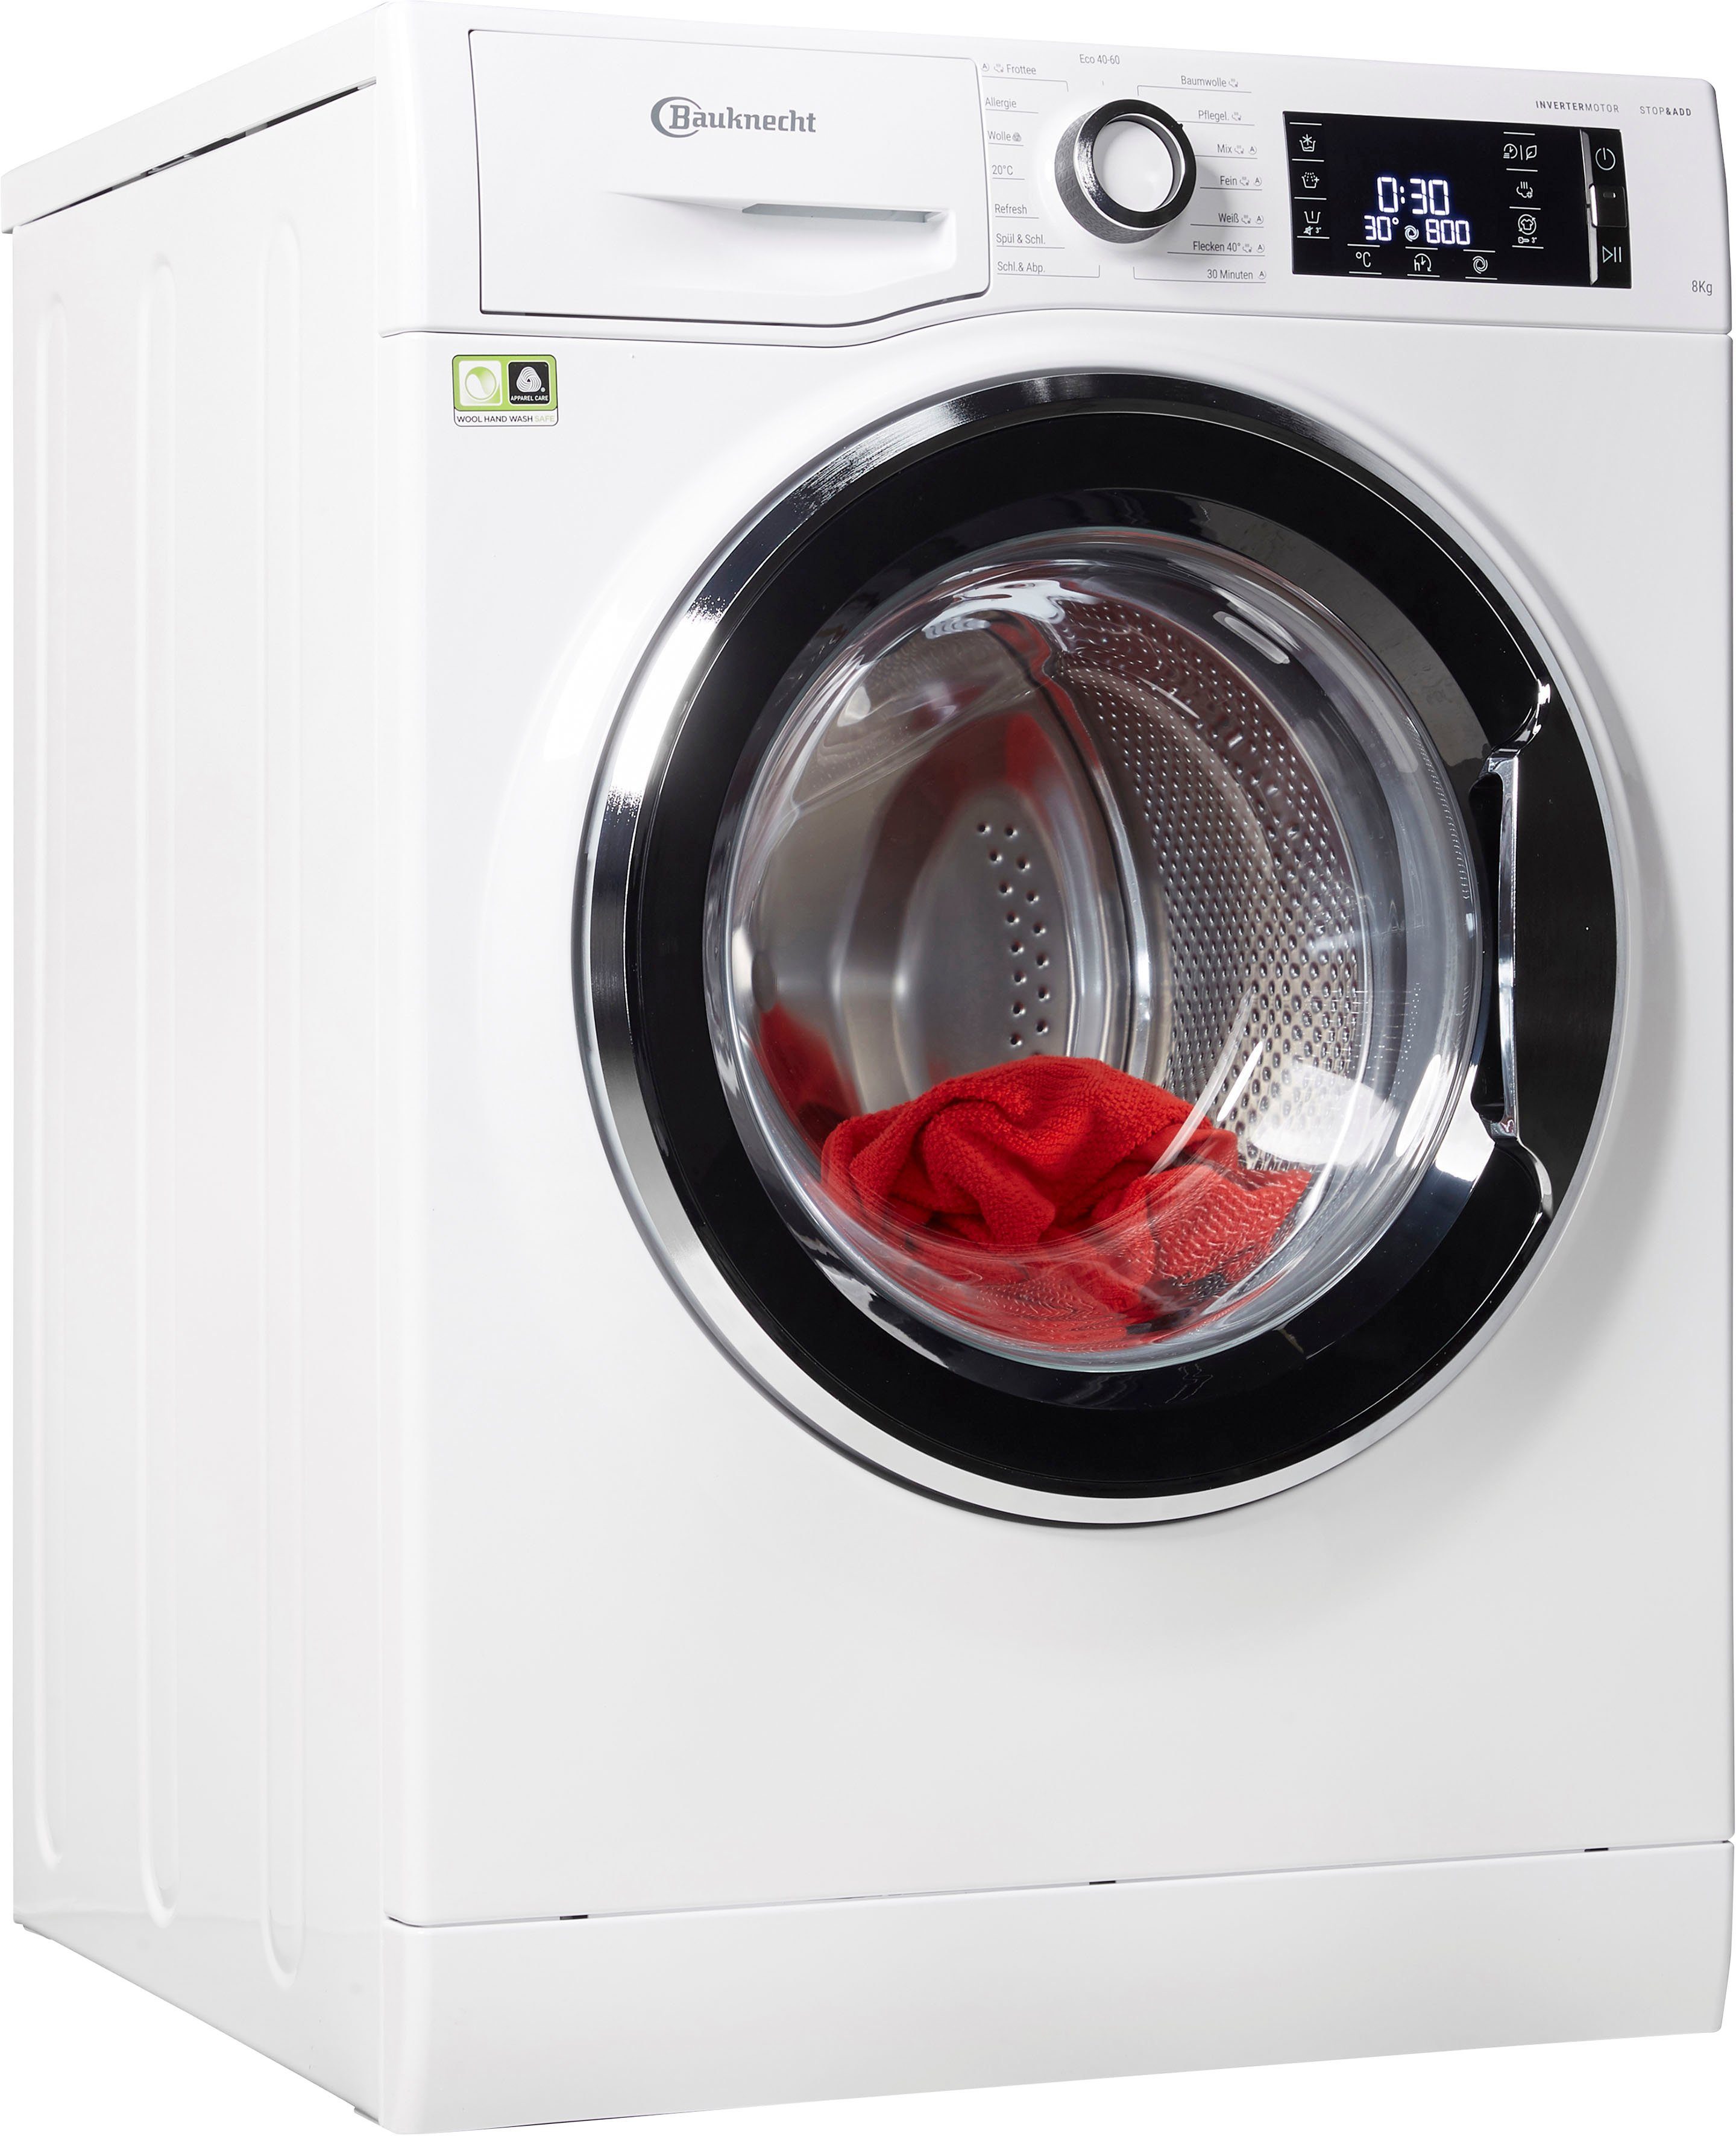 BAUKNECHT Waschmaschine WM Elite 816 C, 8 kg, 1600 U/min online kaufen |  OTTO